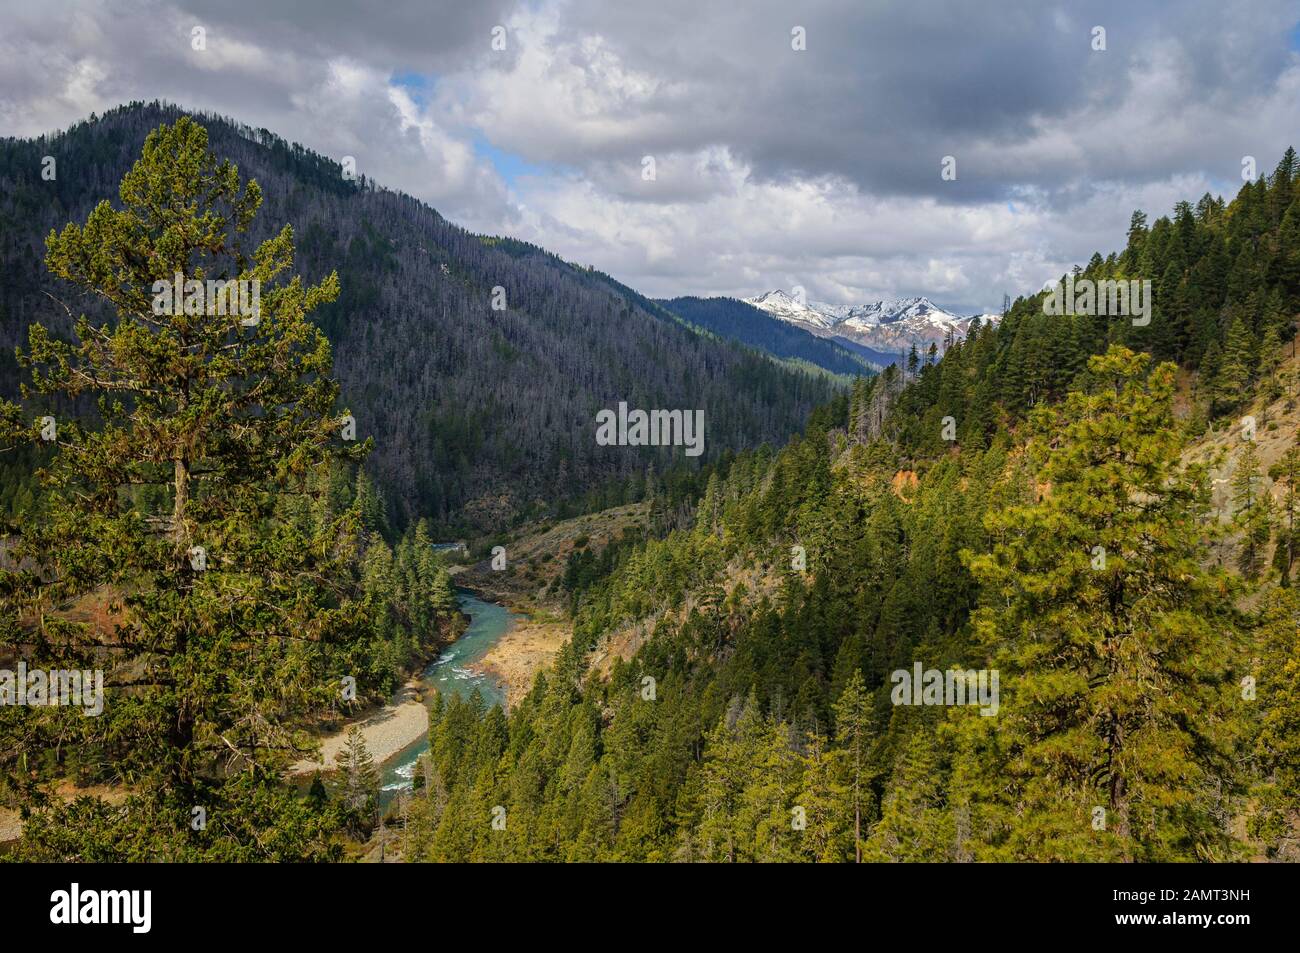 La rivière Wild et Scenic Illinois dans les montagnes Siskiyou du sud-ouest de l'Oregon. Banque D'Images